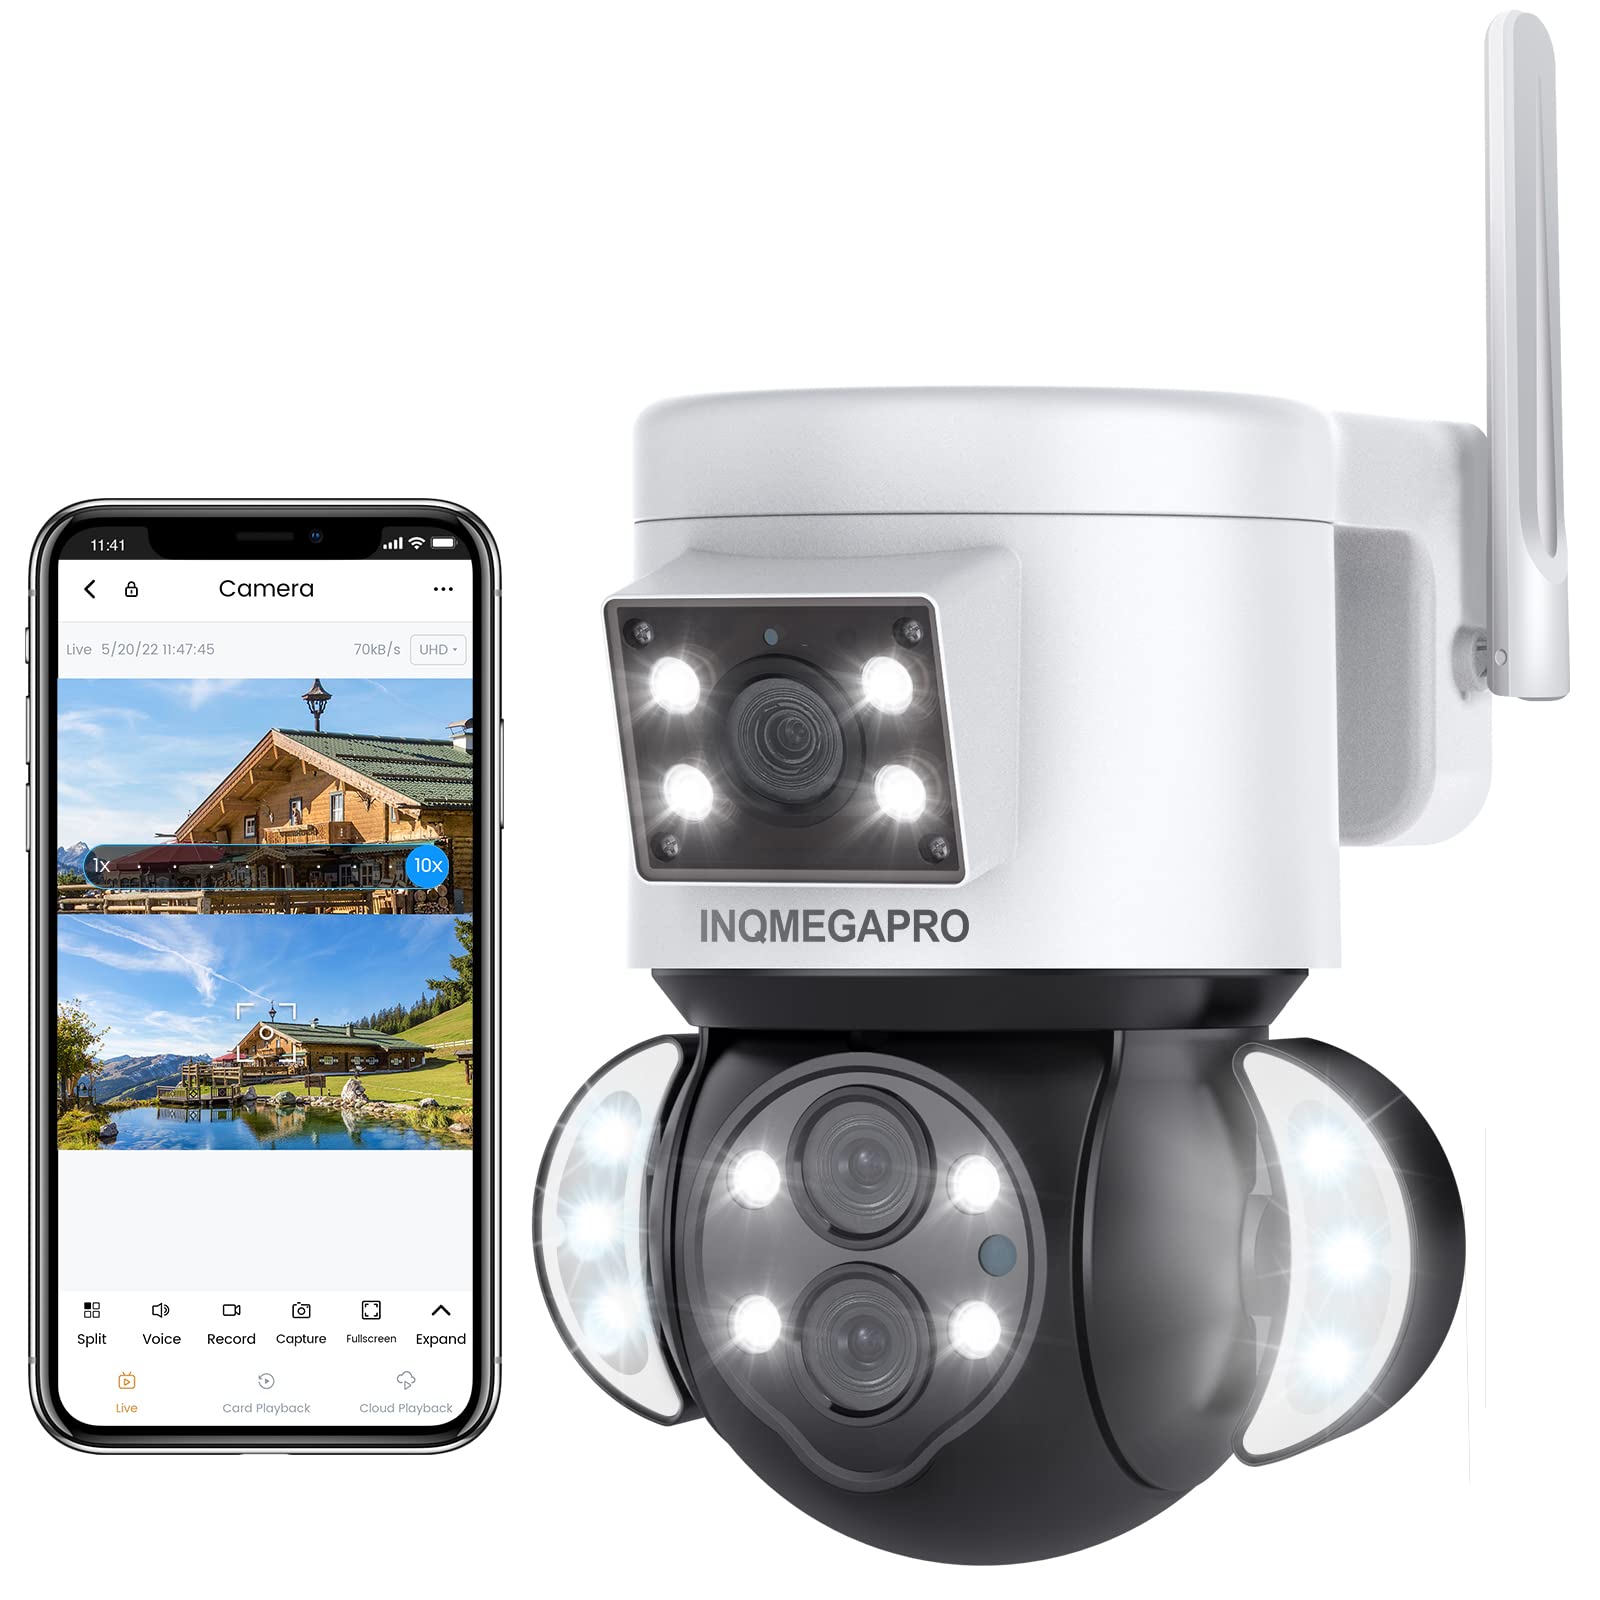 INQMEGAPRO 4K PTZ Überwachungskamera Aussen mit Dual-Objektiv, 2.4GHz WLAN, 6X Optischem Zoom, Farbnachtsicht, Auto-Tracking, 2-Wege-Audio, Multi-User-Sharing